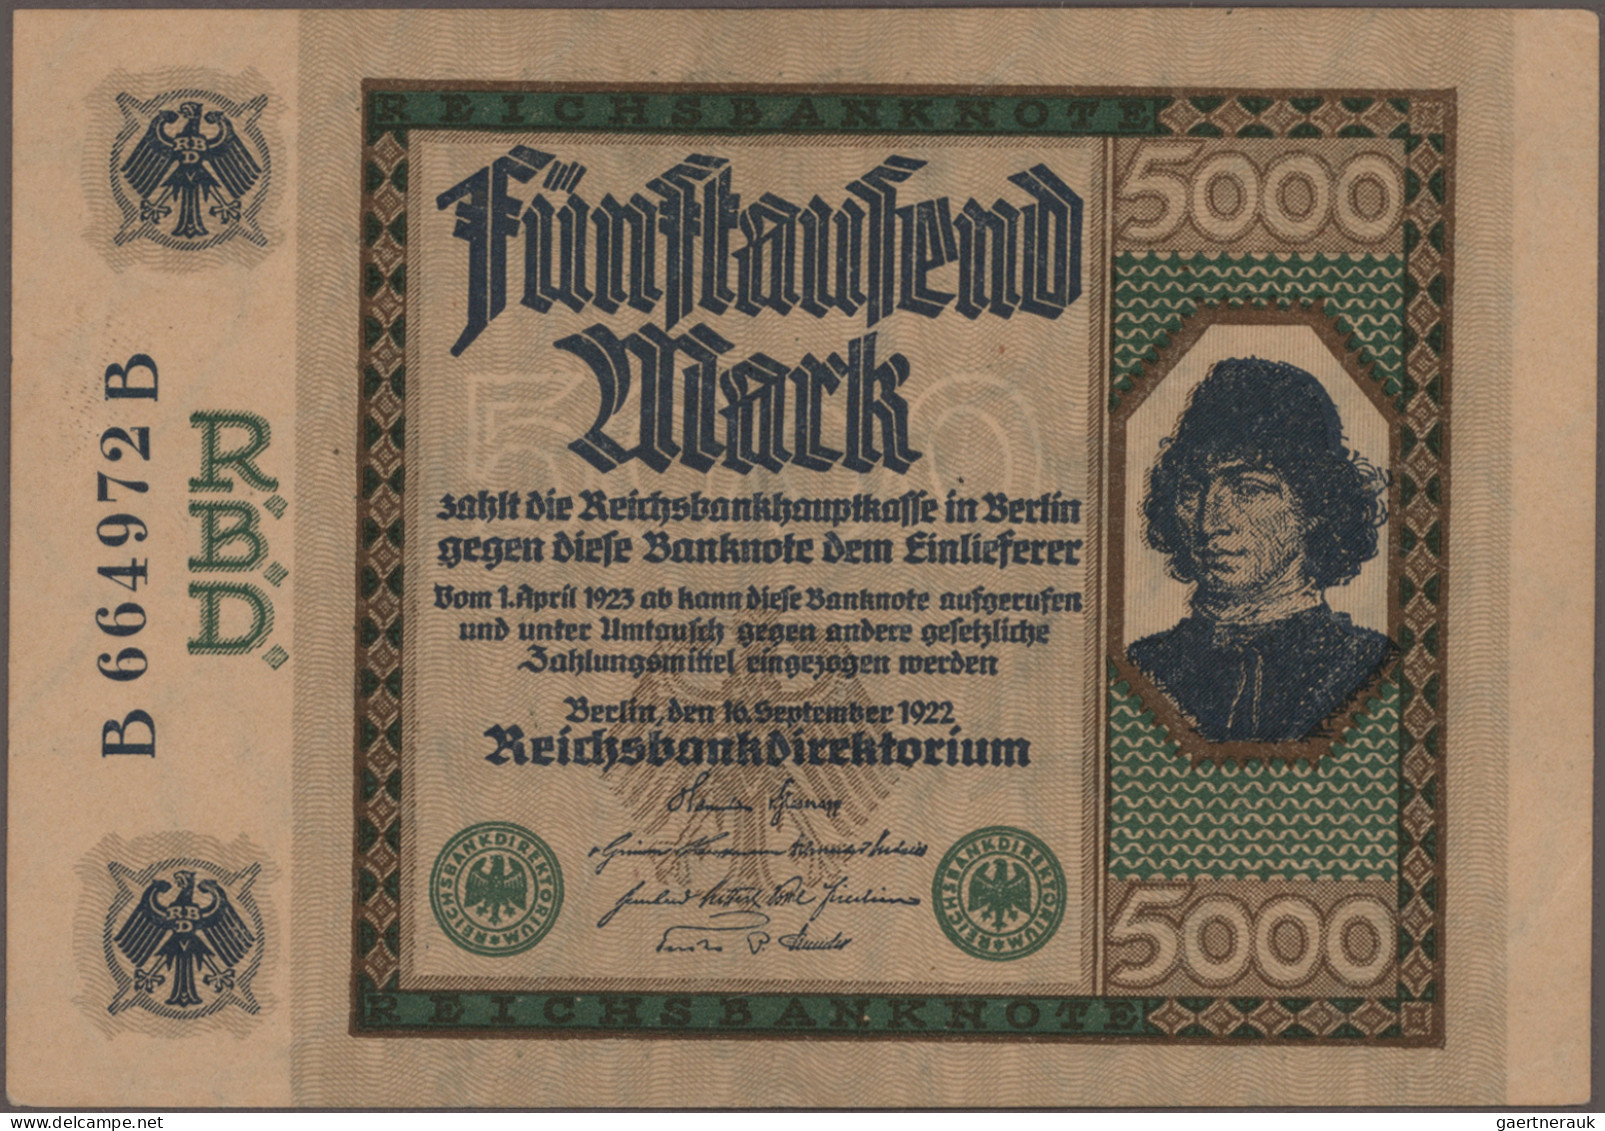 Deutschland - Deutsches Reich bis 1945: Großes Konvolut mit 392 Banknoten der In